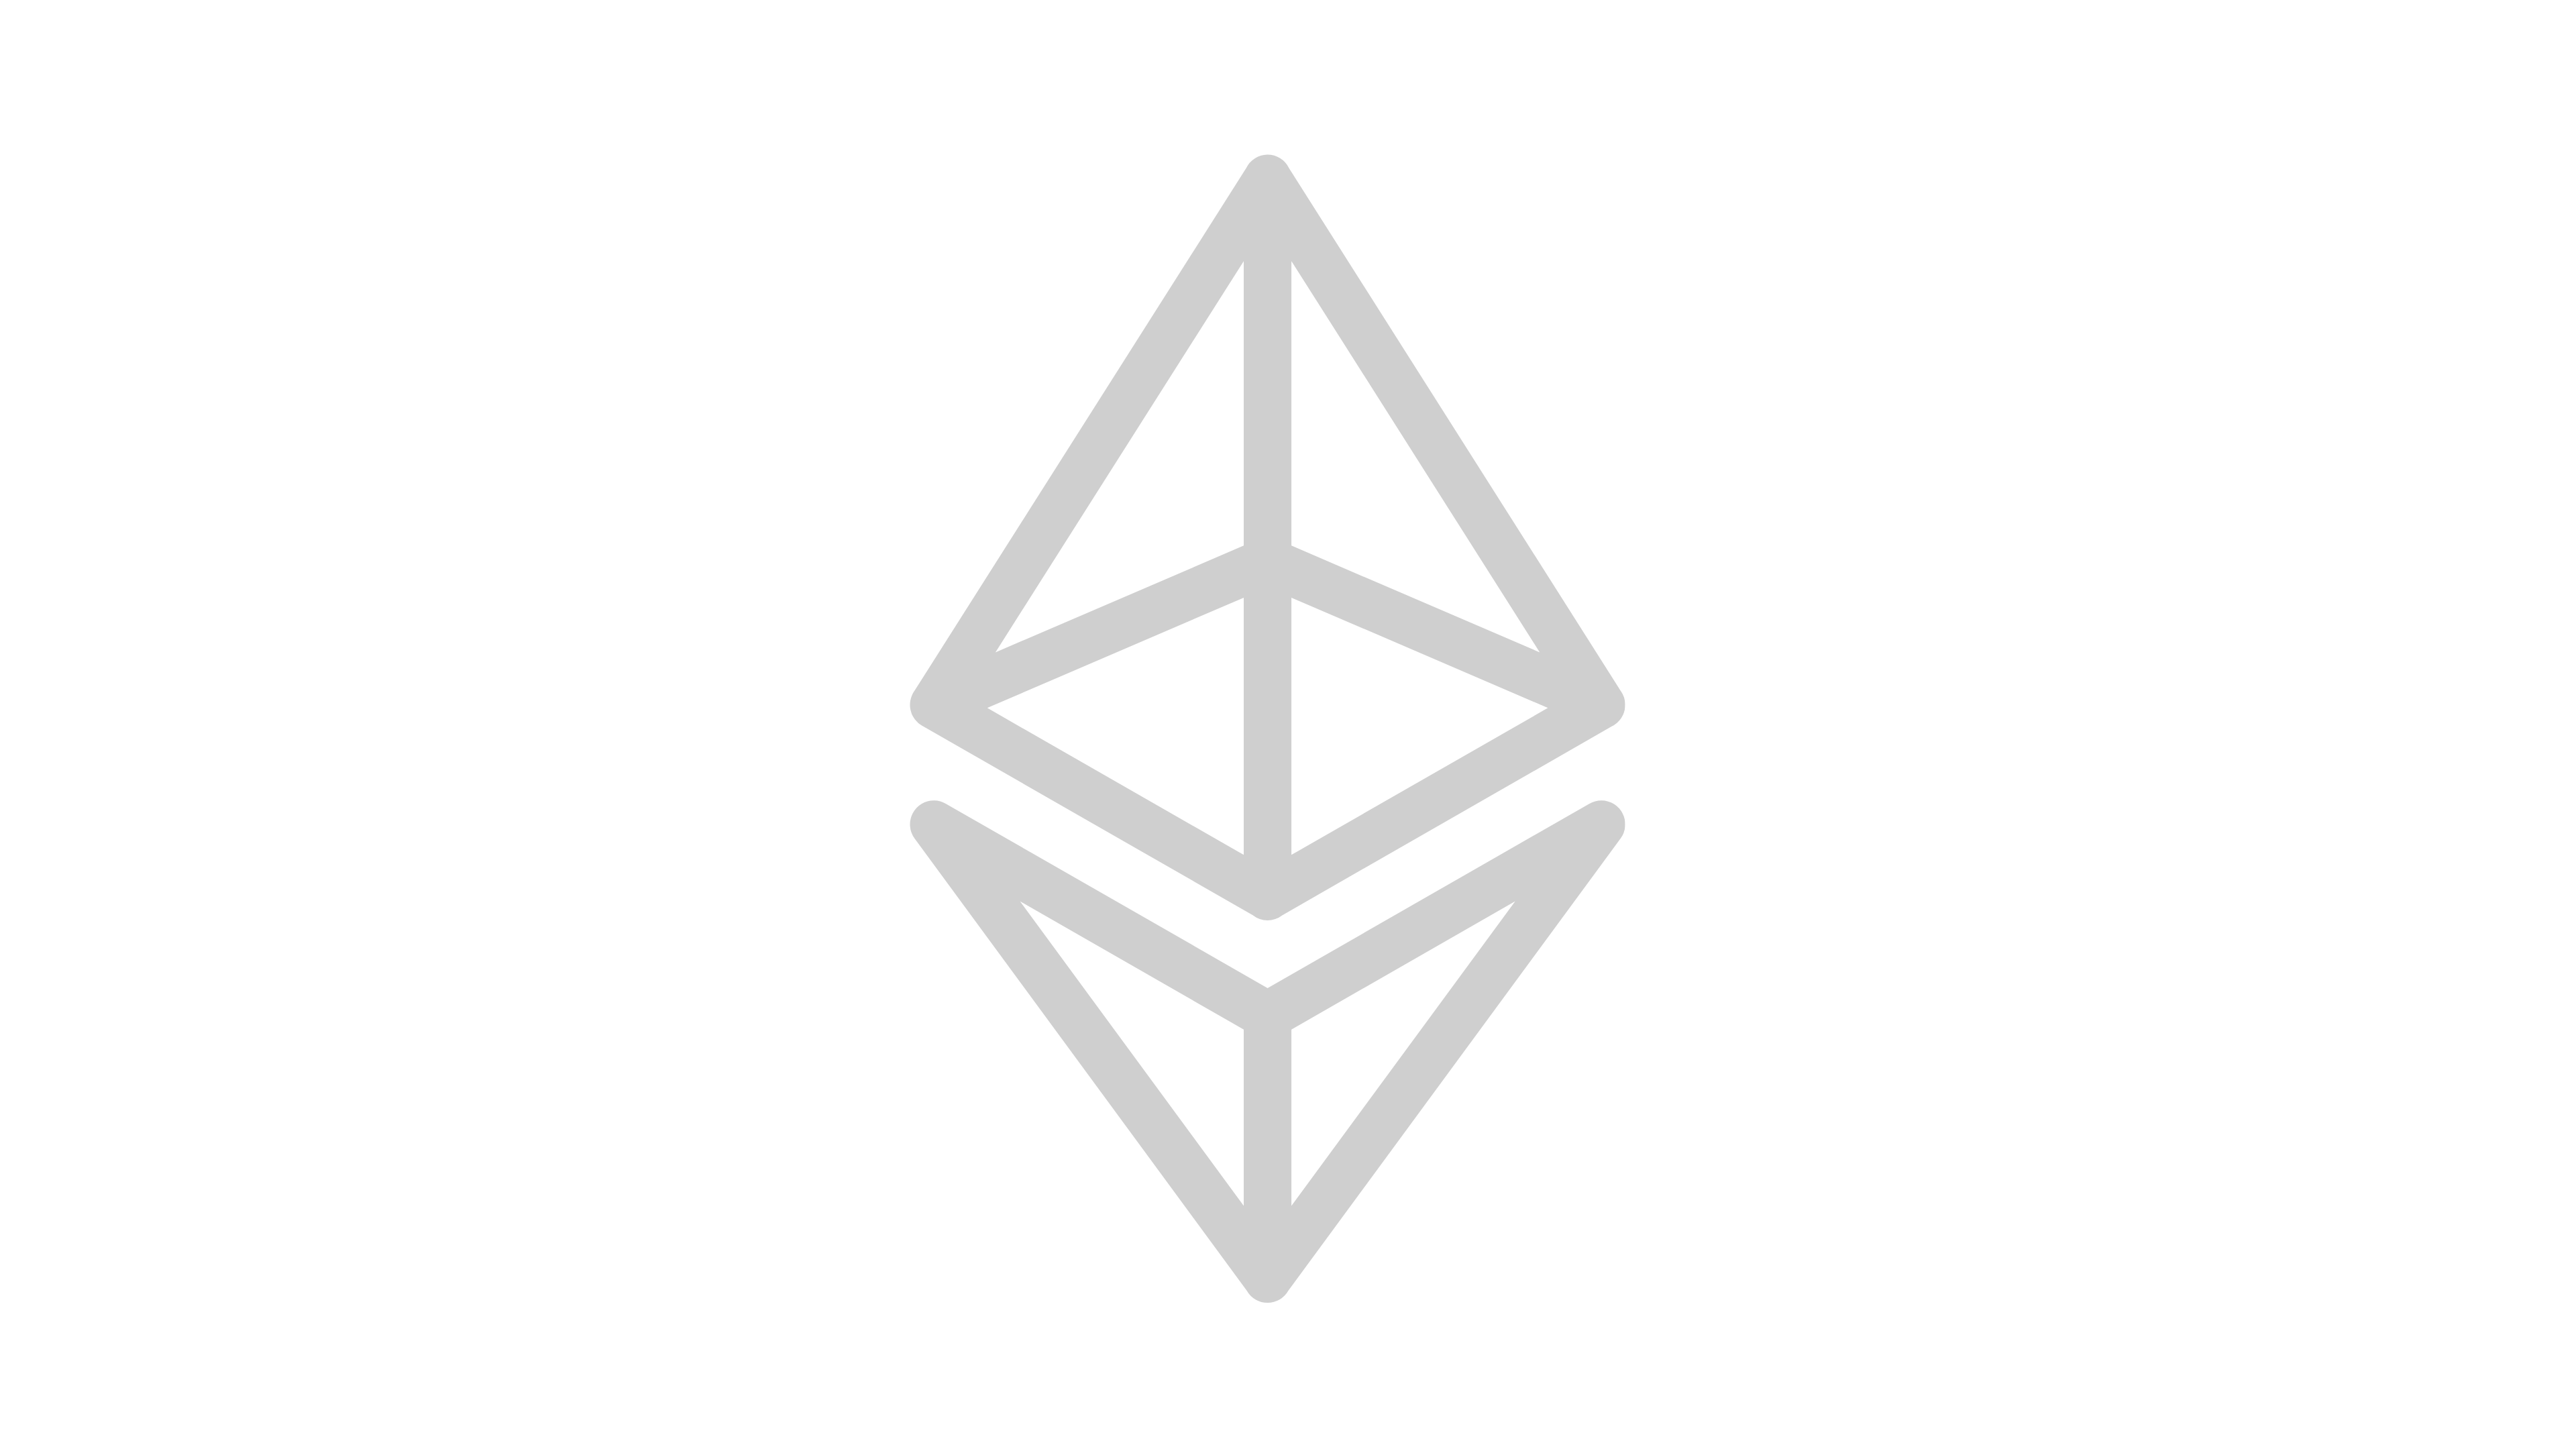 Etherium blockchain logo